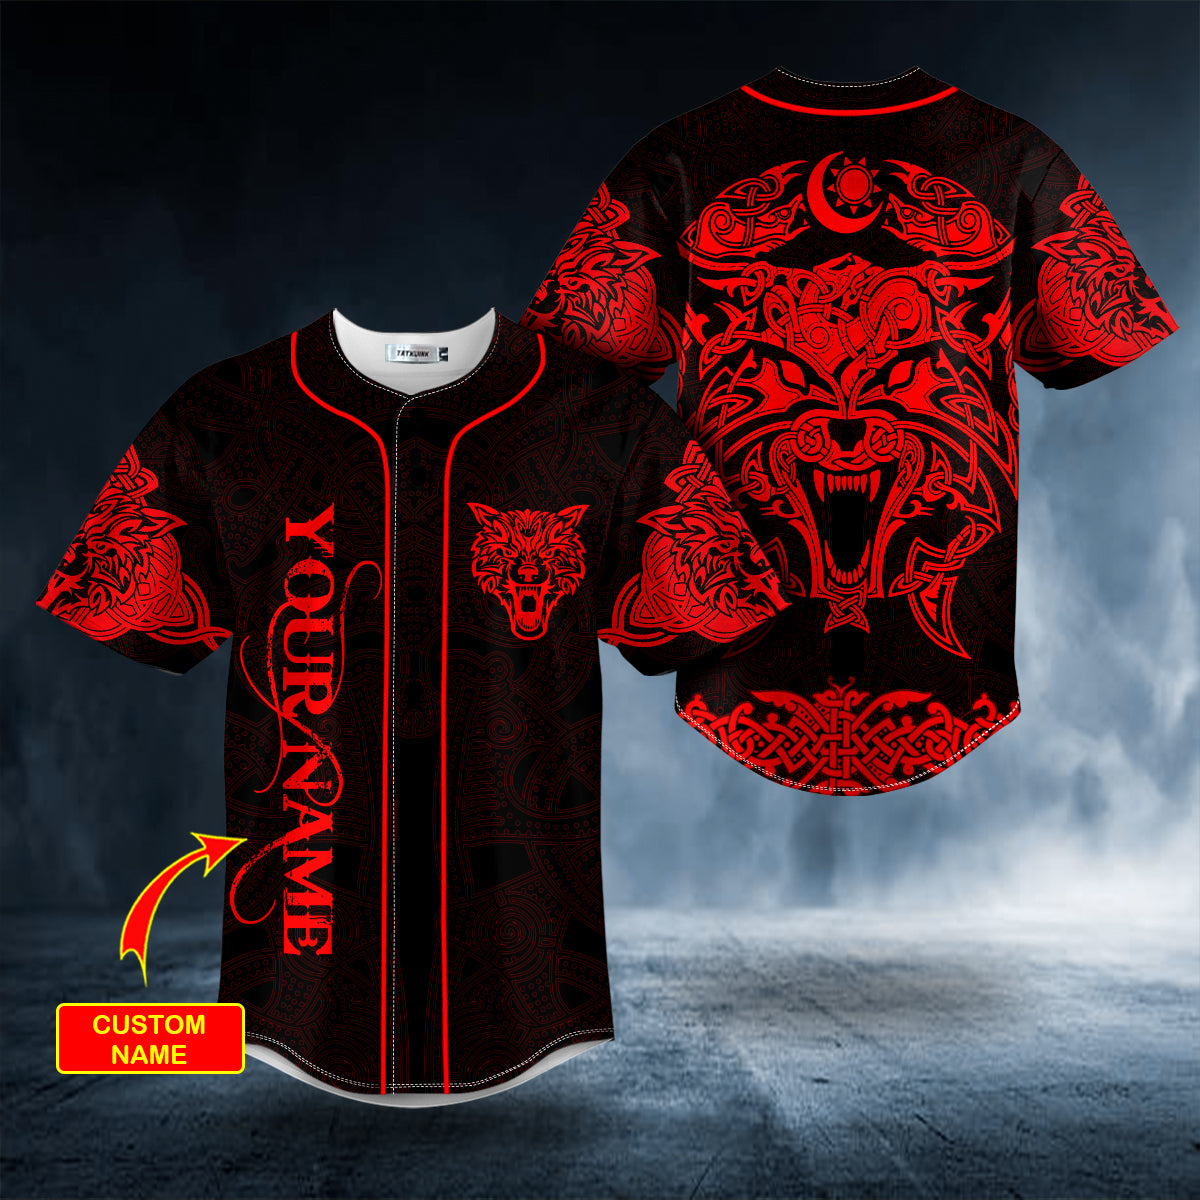 red wolf power viking tattoo custom baseball jersey bsj 1076 w16jx